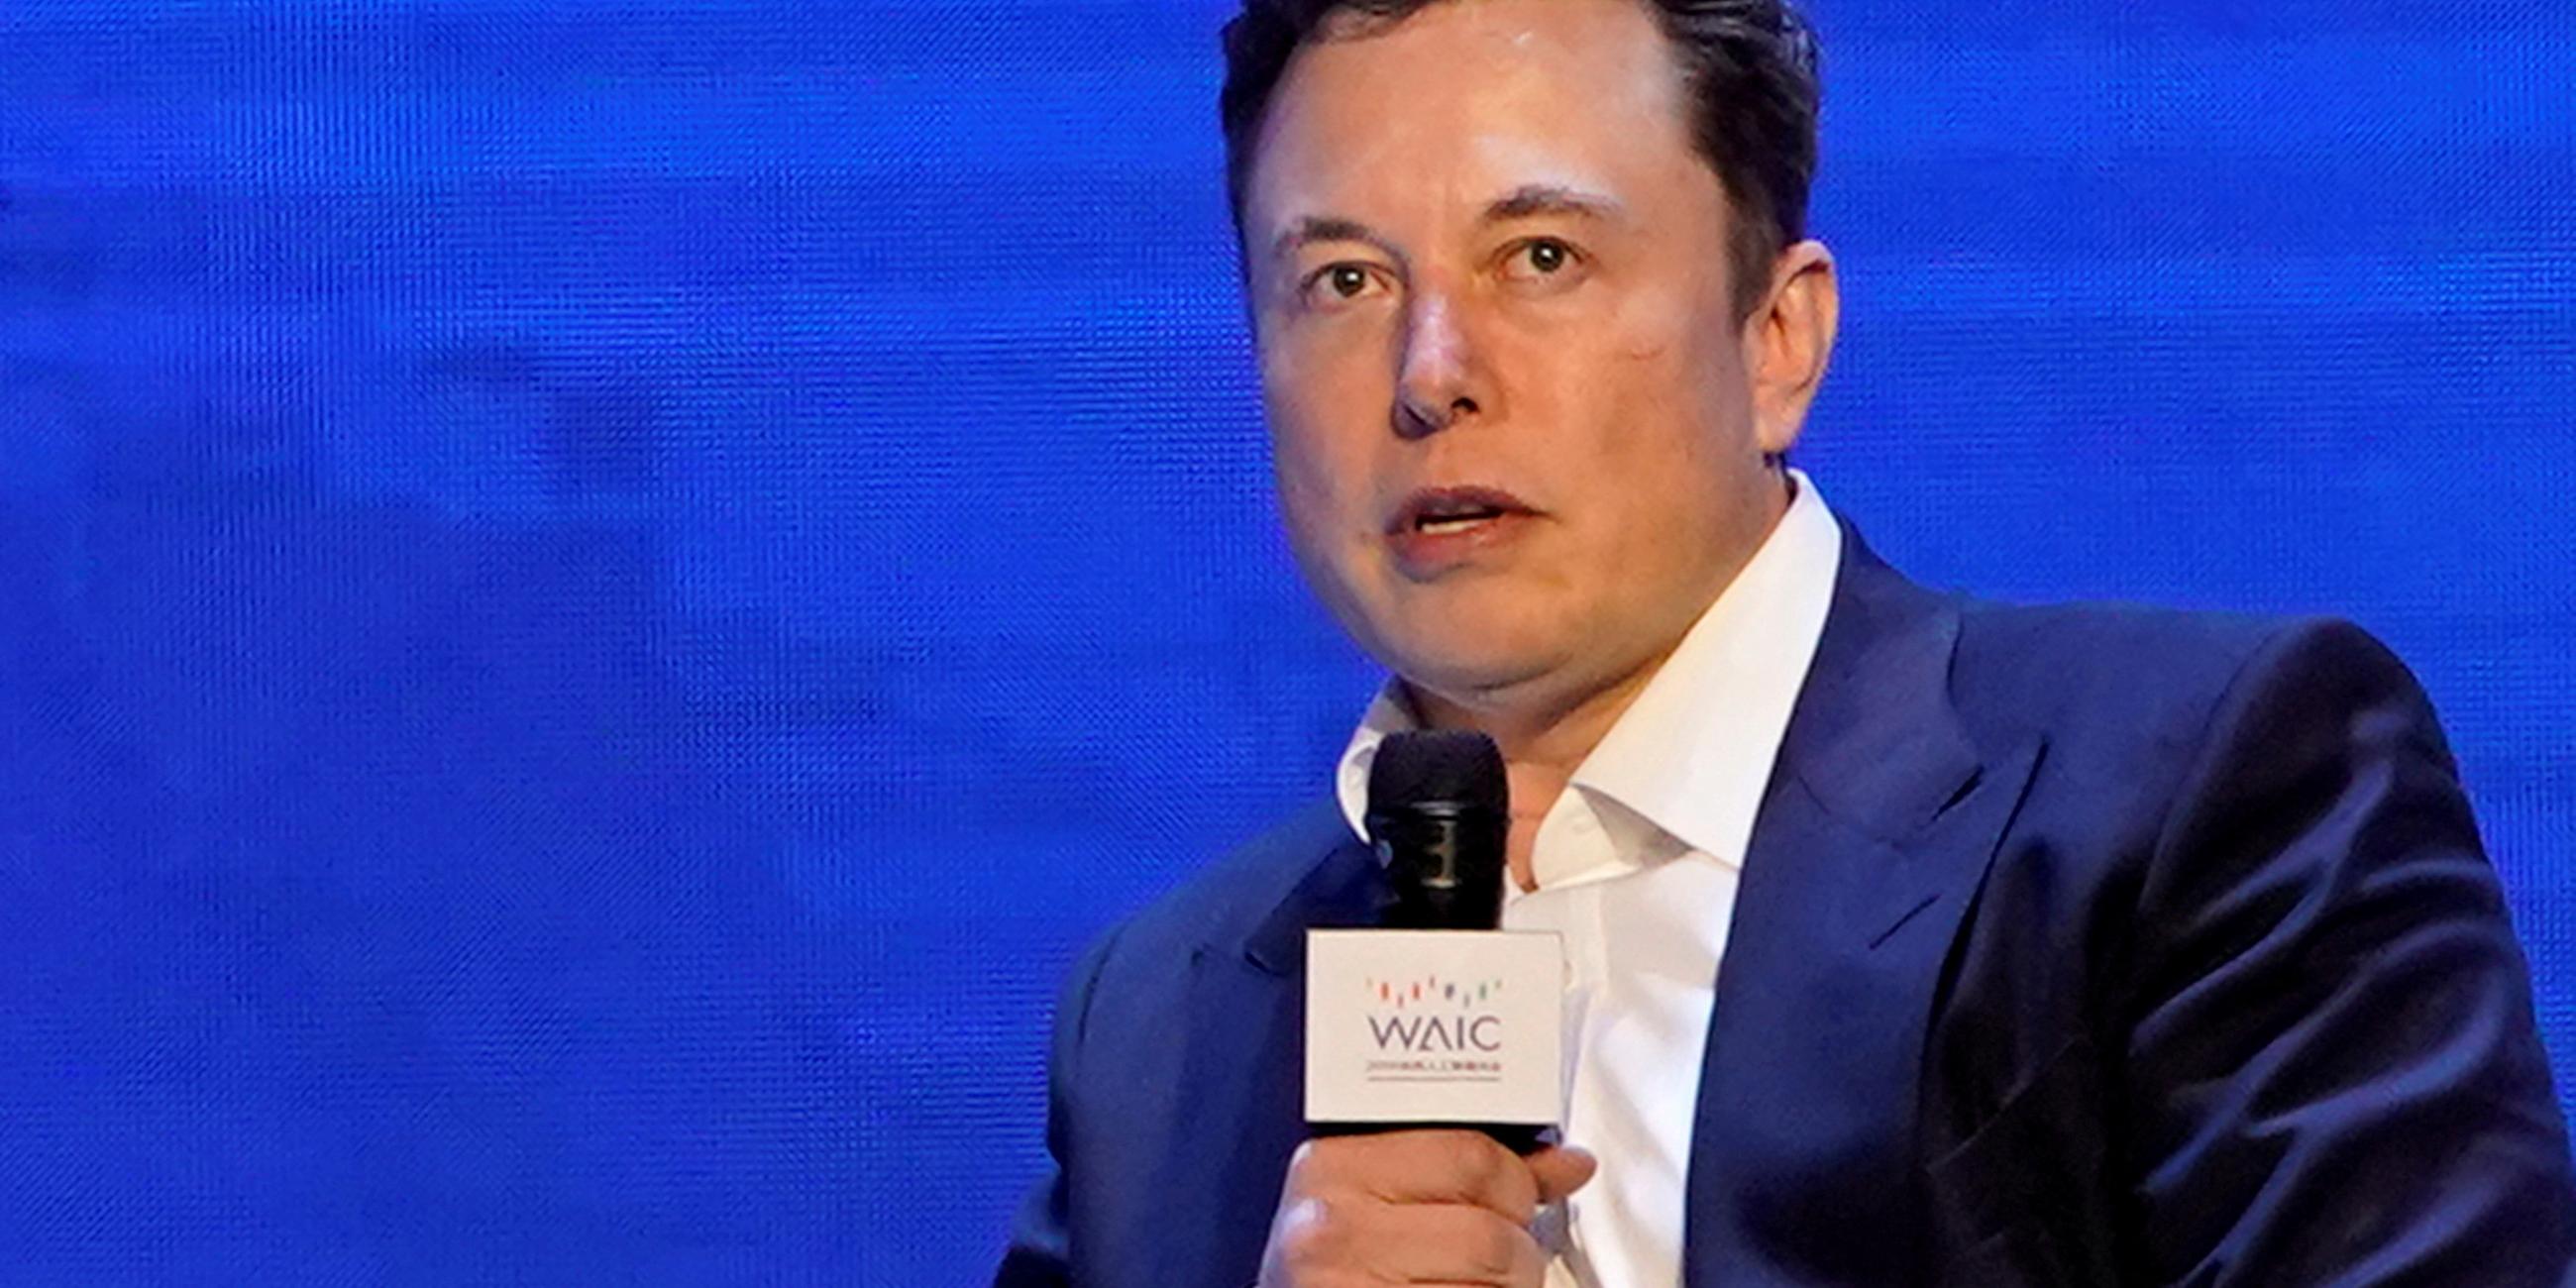 Elon Musk spricht auf der Weltkonferenz für künstliche Intelligenz in Shanghai